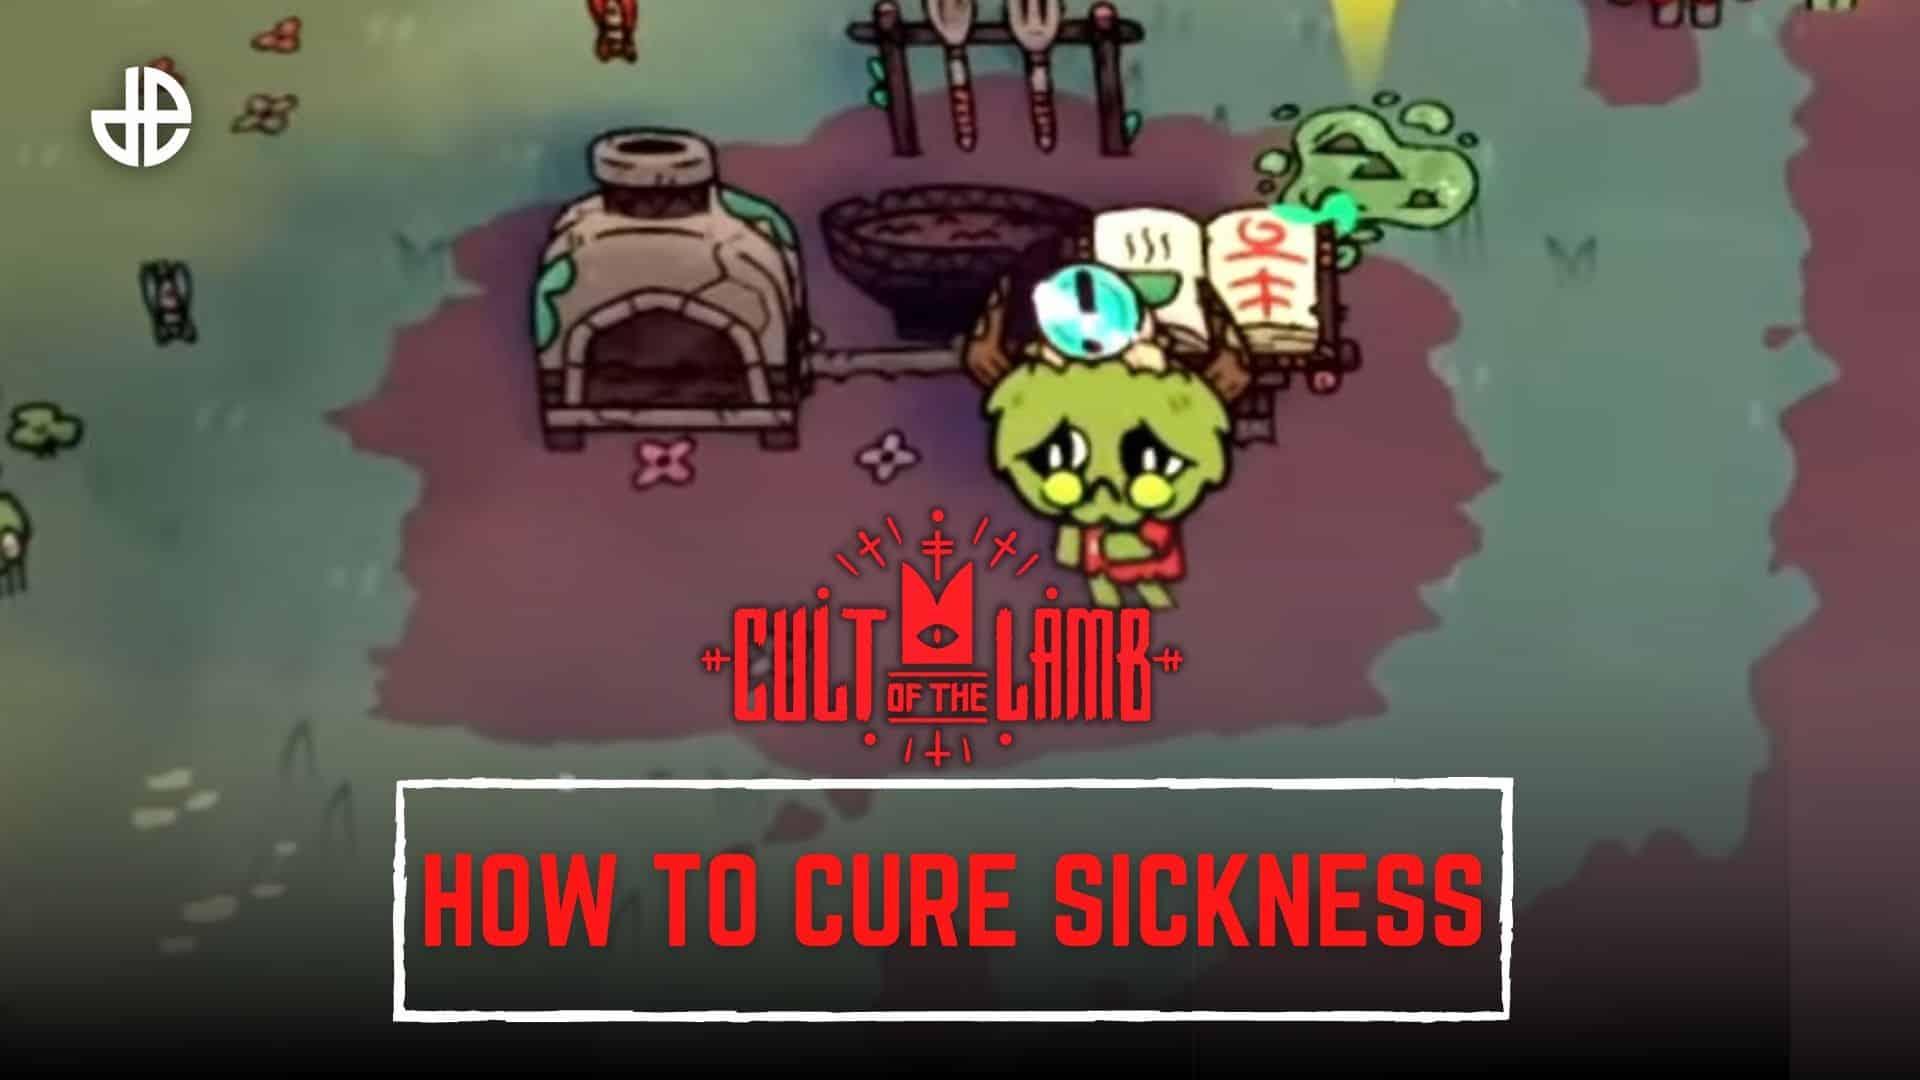 Cult of the Lamb curing sickness